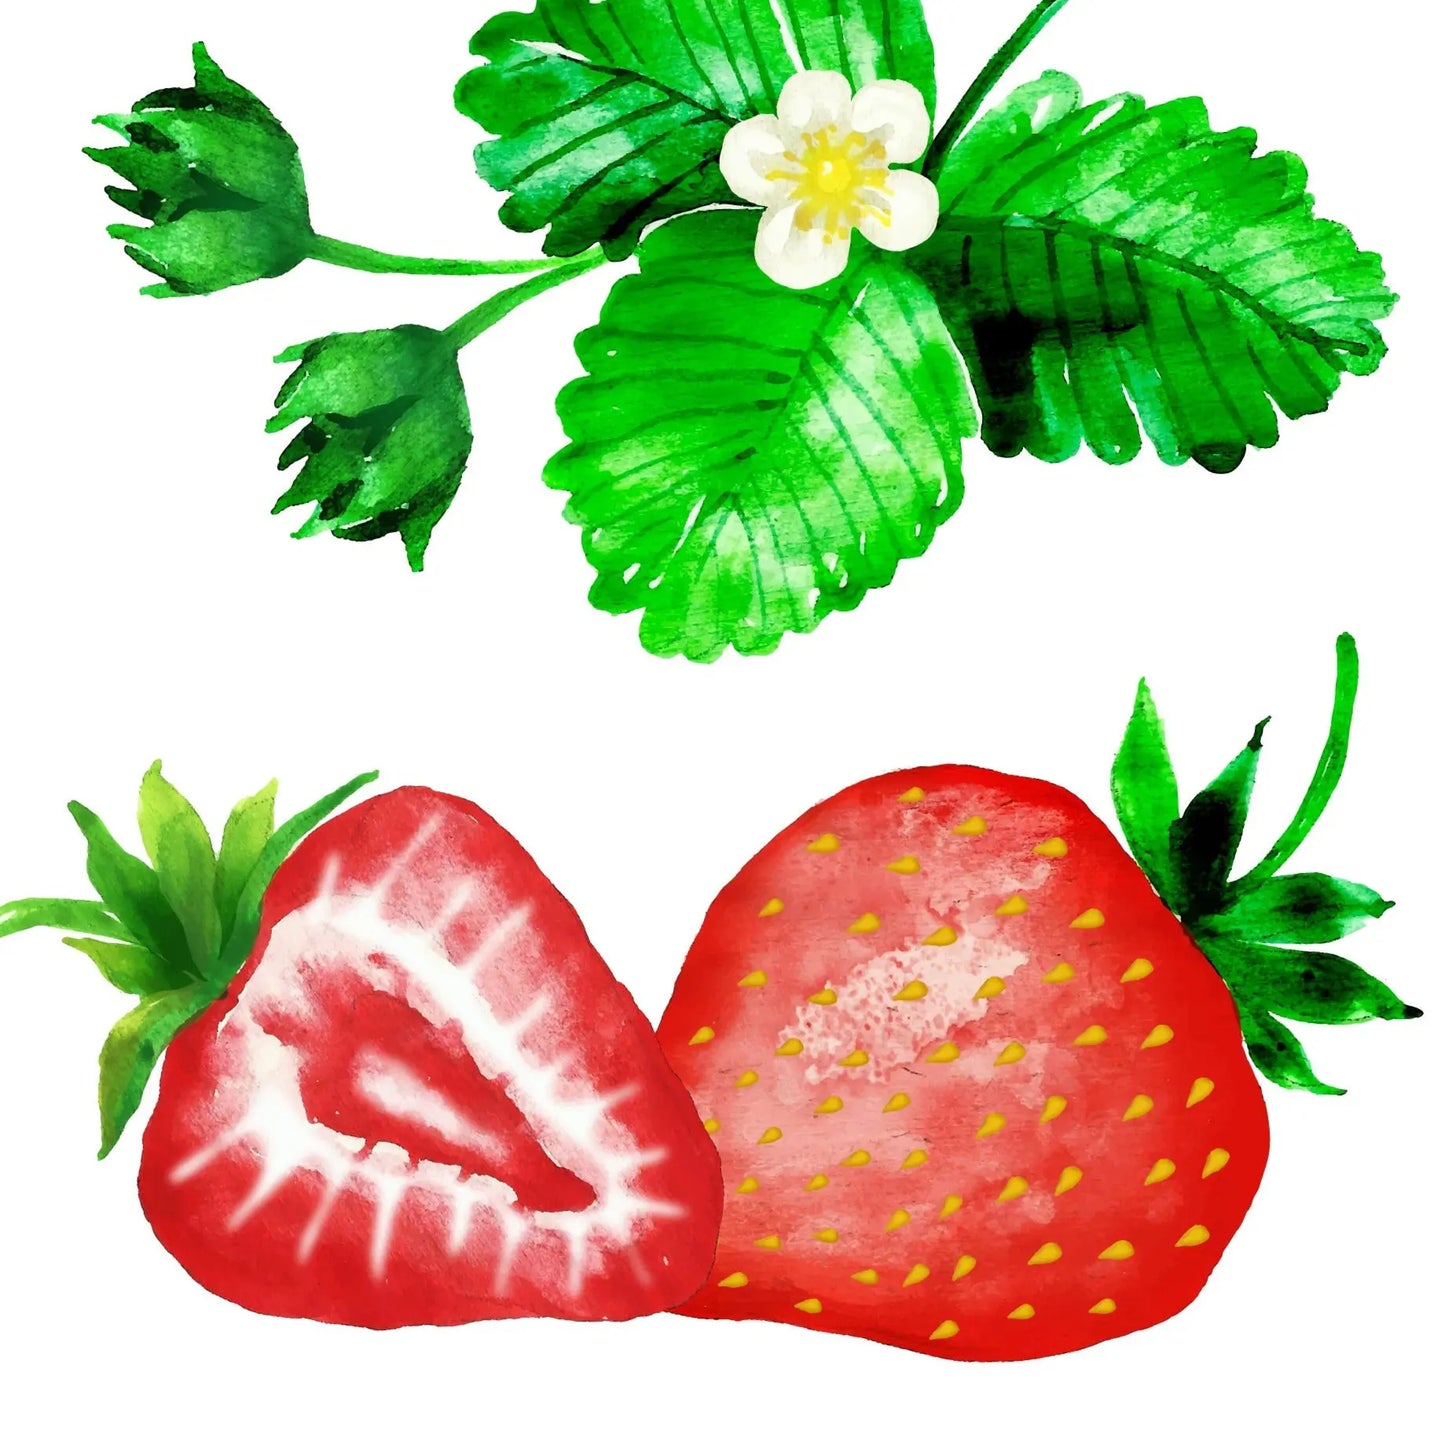 Strawberry Tinted Lip Balm - Rainwater Botanicals